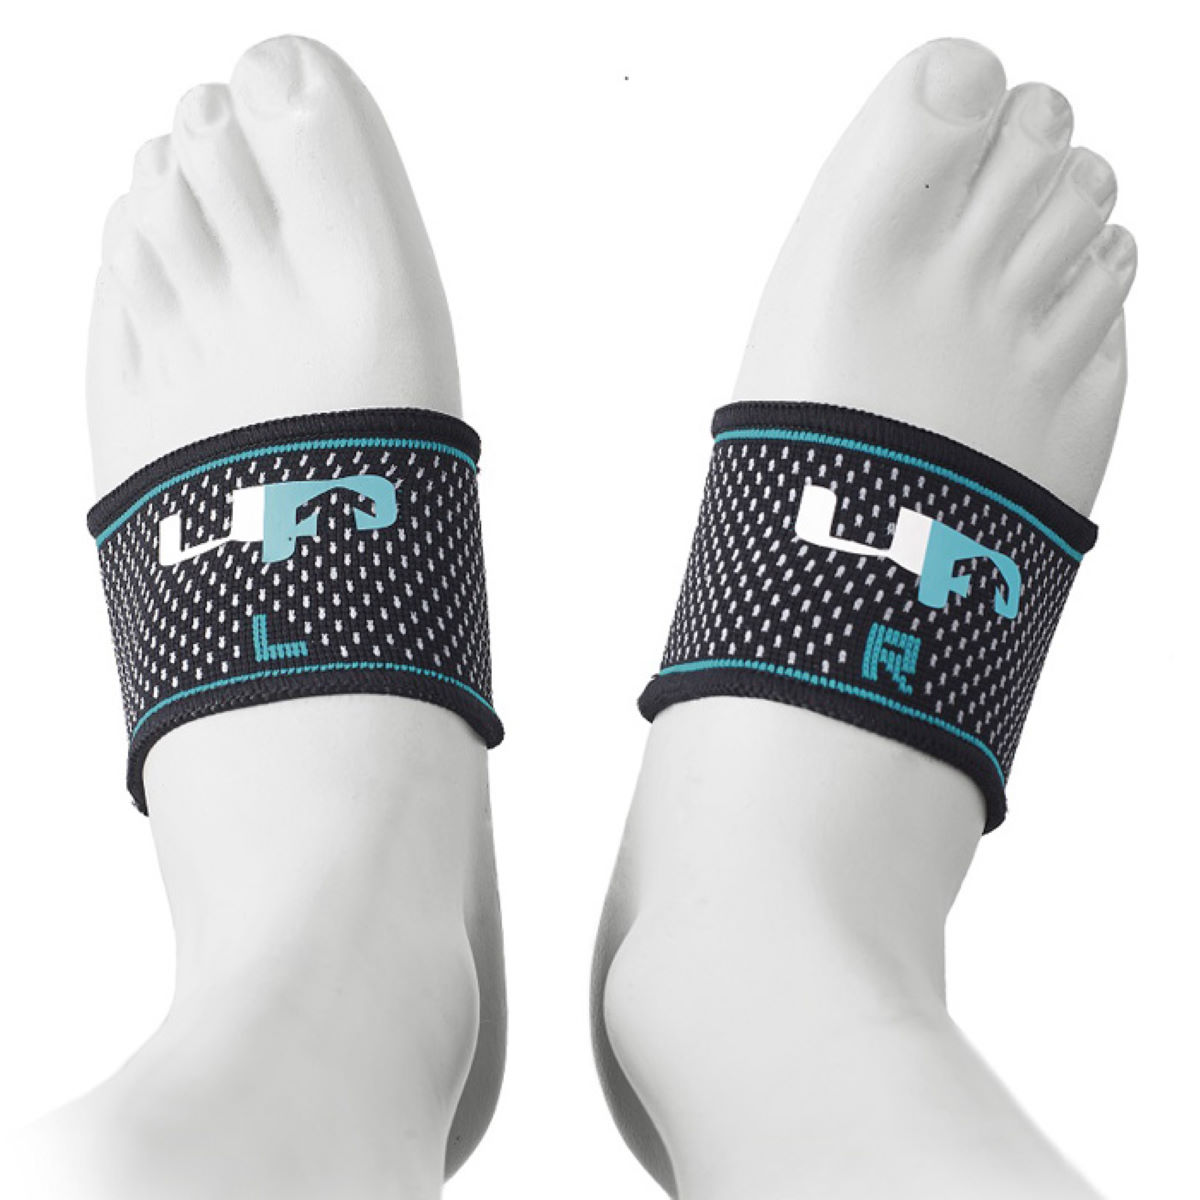 Banda de soporte para el arco del pie Ultimate Performance Elastic - Calcetines de sujeción